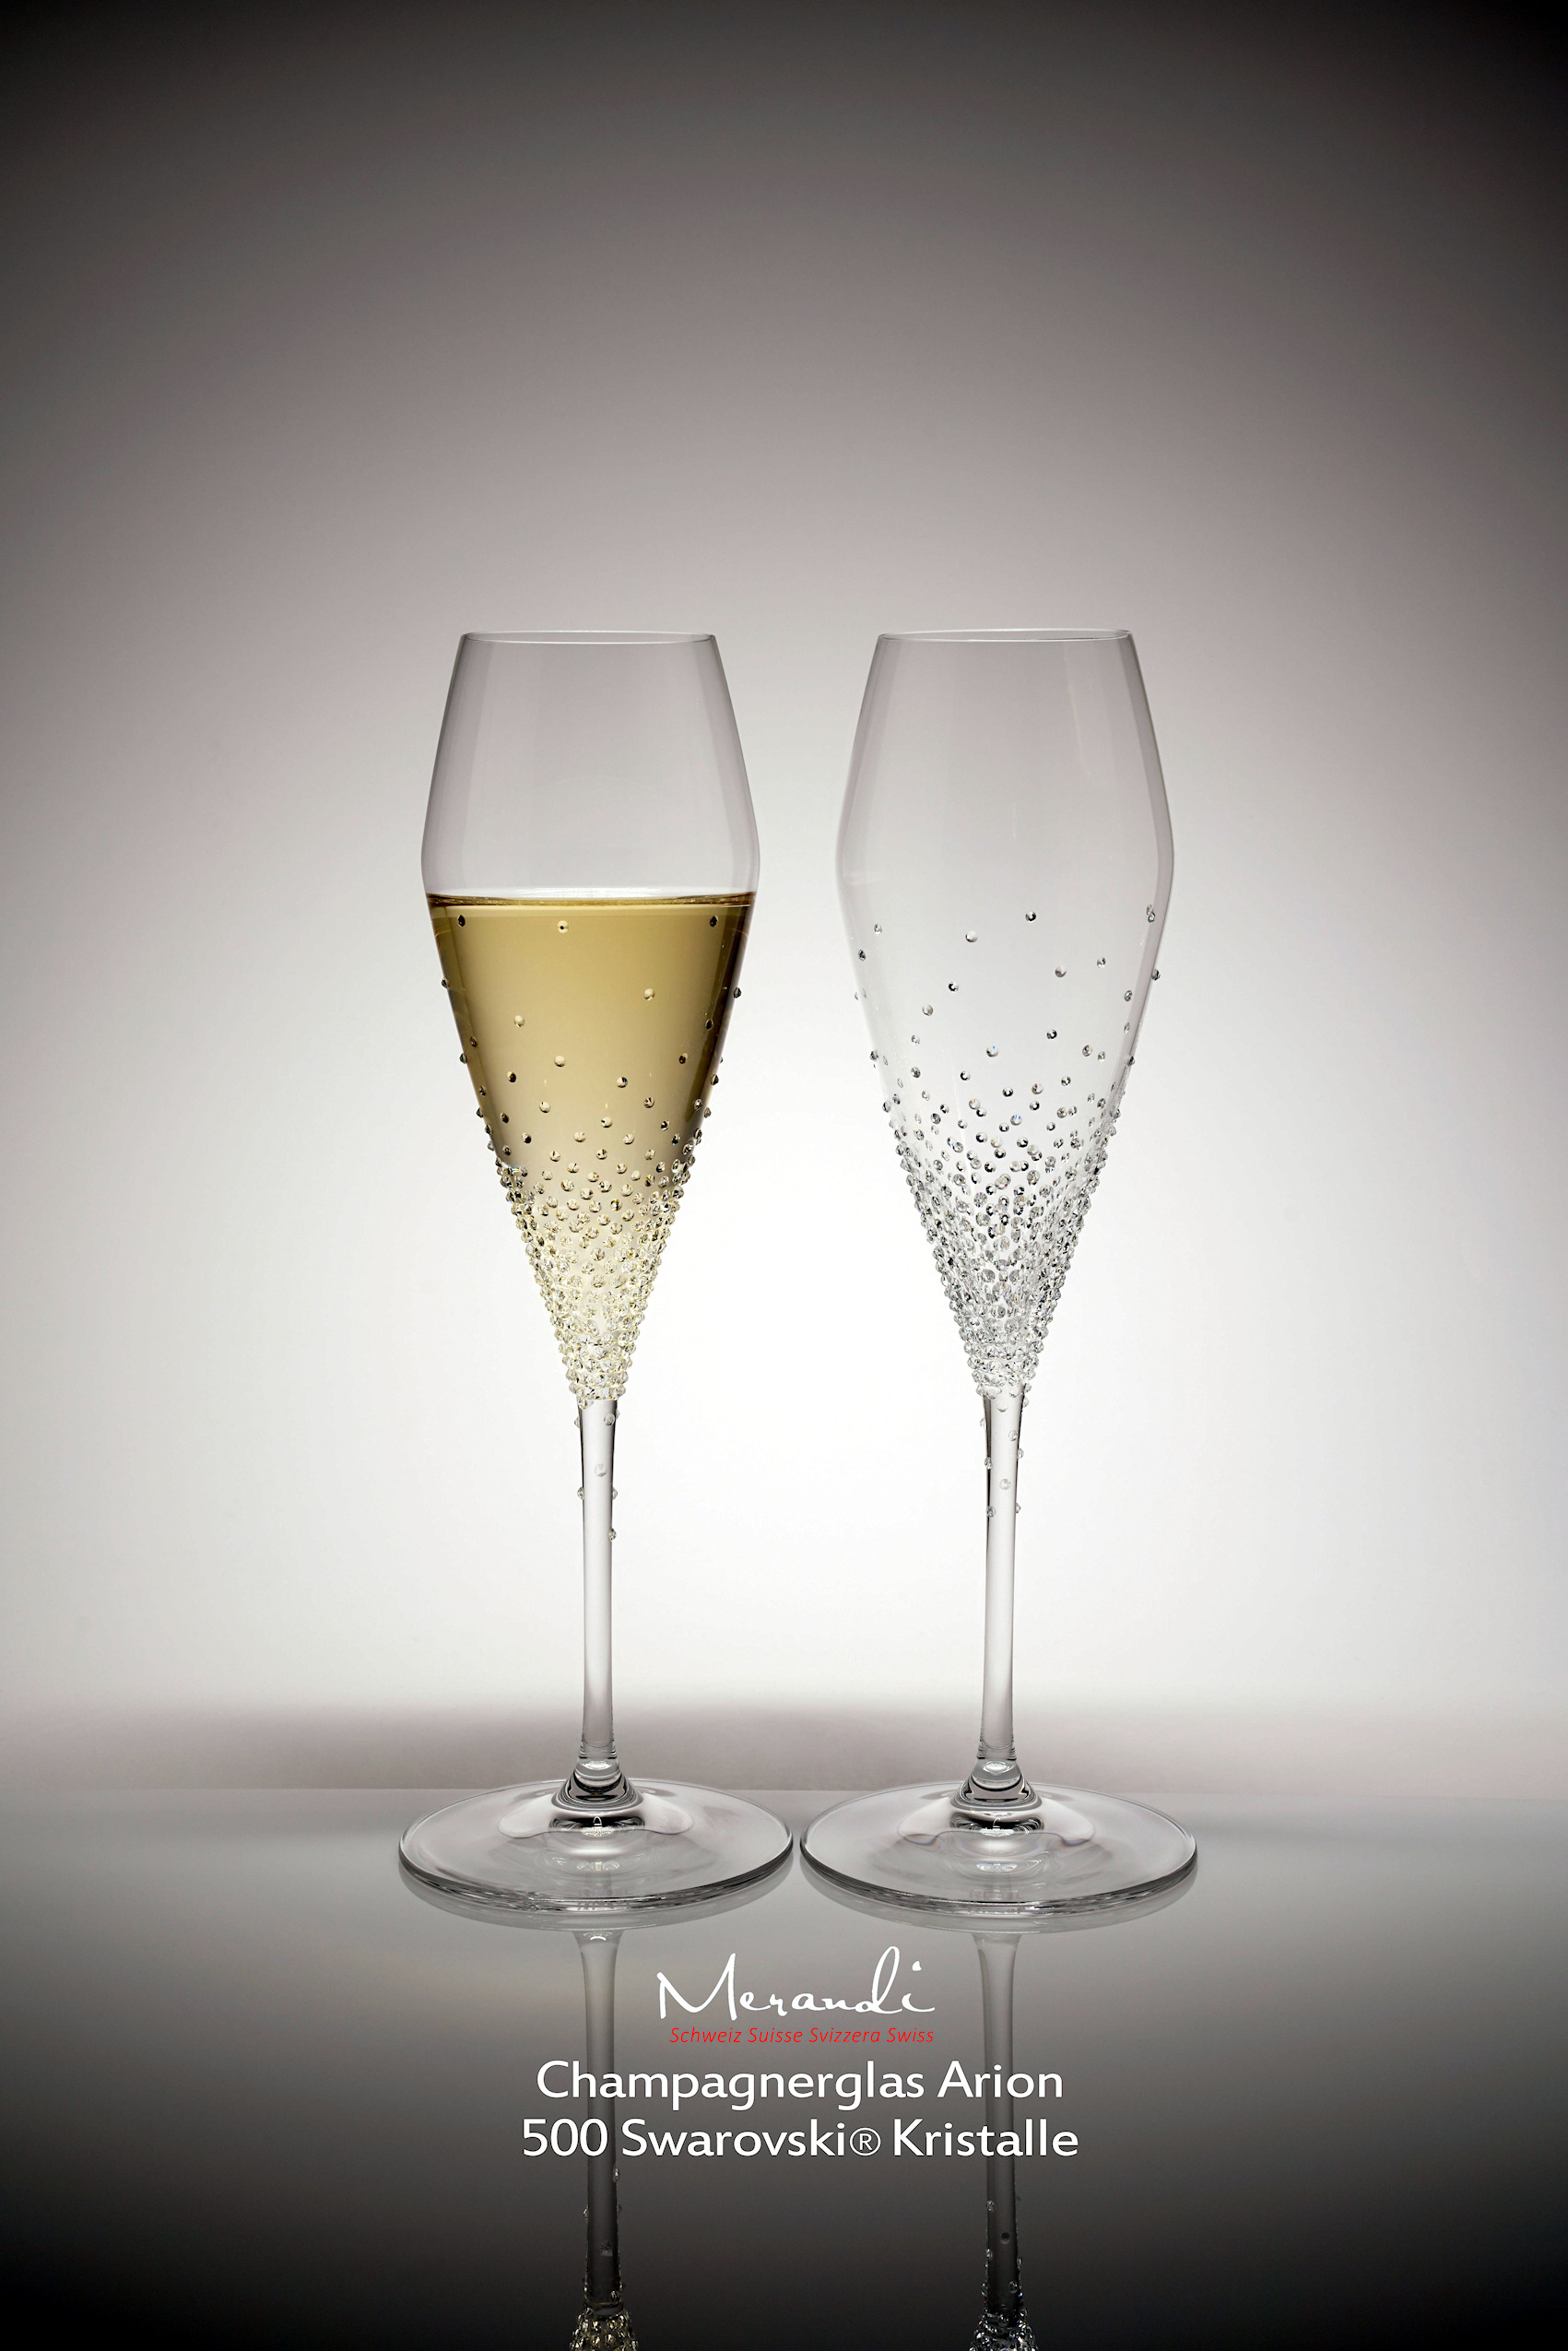 Oro Perfetto per Regali di Nozze Feste Compleanno Anniversario 6,8oz Set di 2 Bicchieri da Champagne in Vetro Sziqiqi Bicchieri da Flute di Champagne